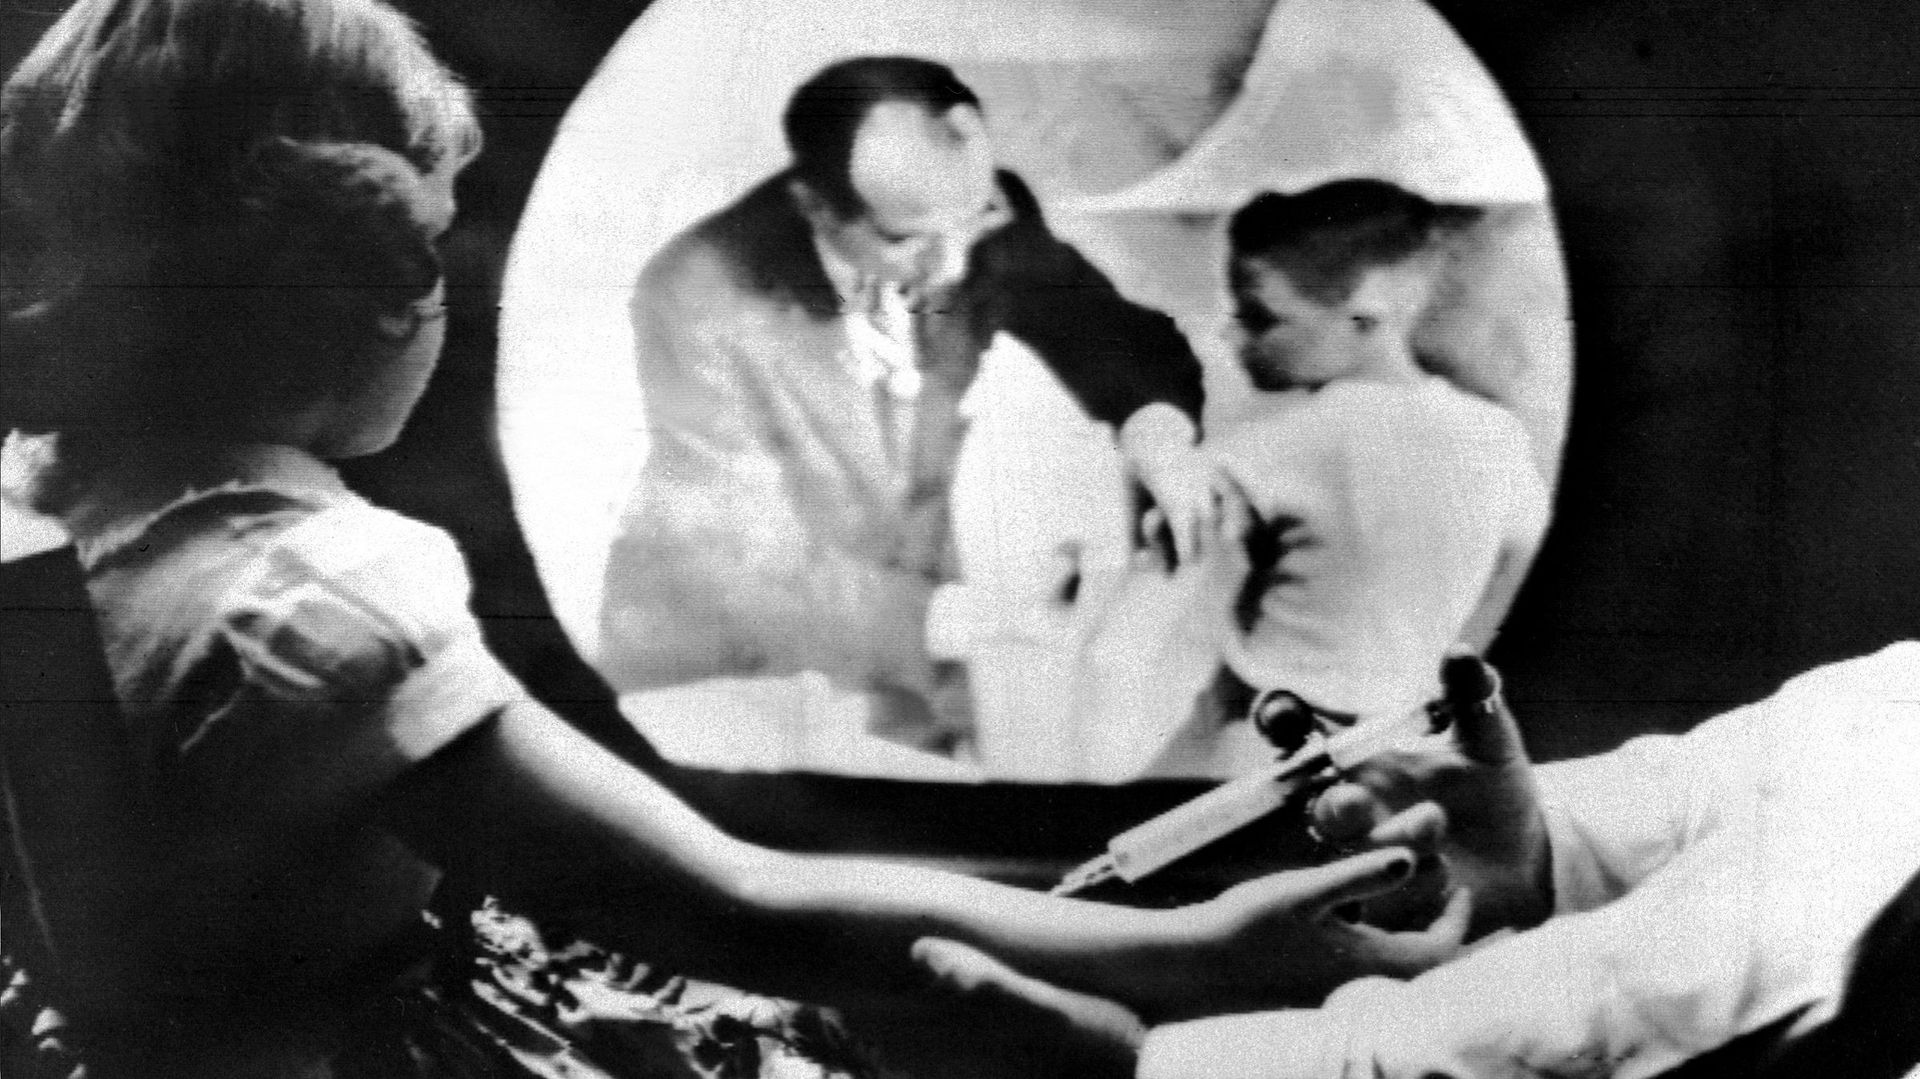 Une petite fille se fait vacciner contre la polio en 1955